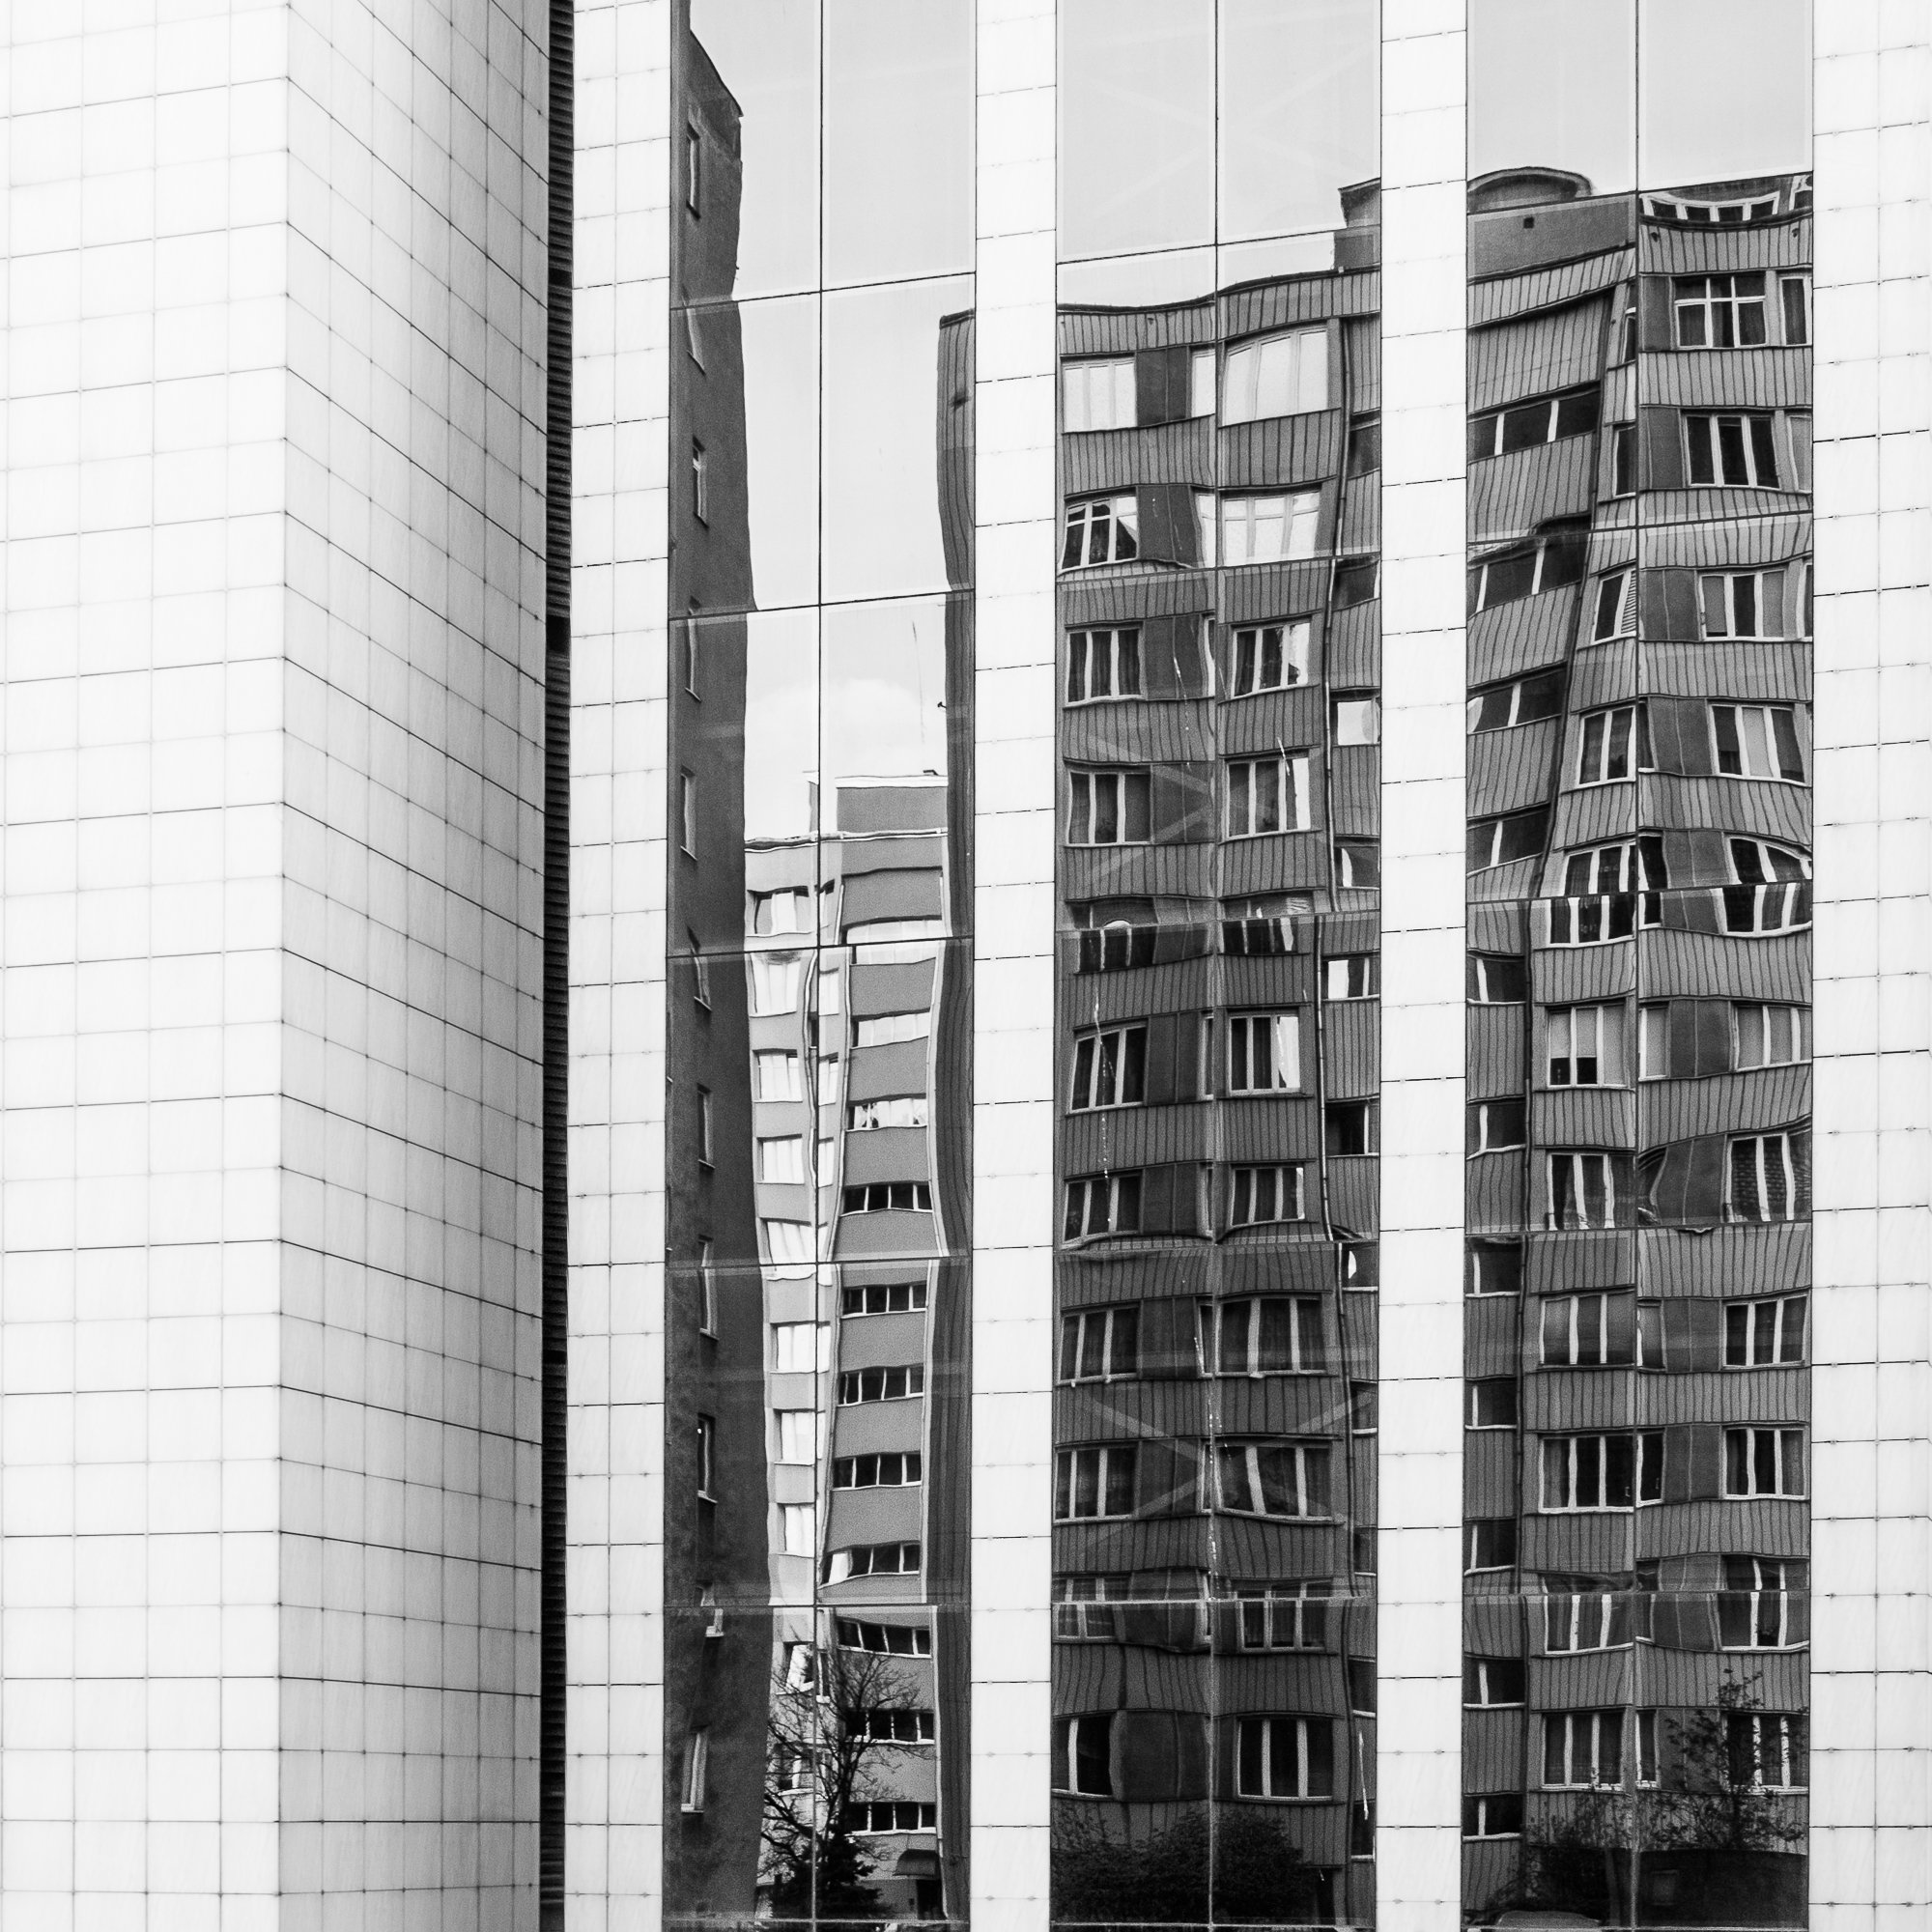 Adam Mazek Photography. Warsaw (Warszawa) 2017. M.C. Escher. Square. Blocks of flats. M.C. Escher.